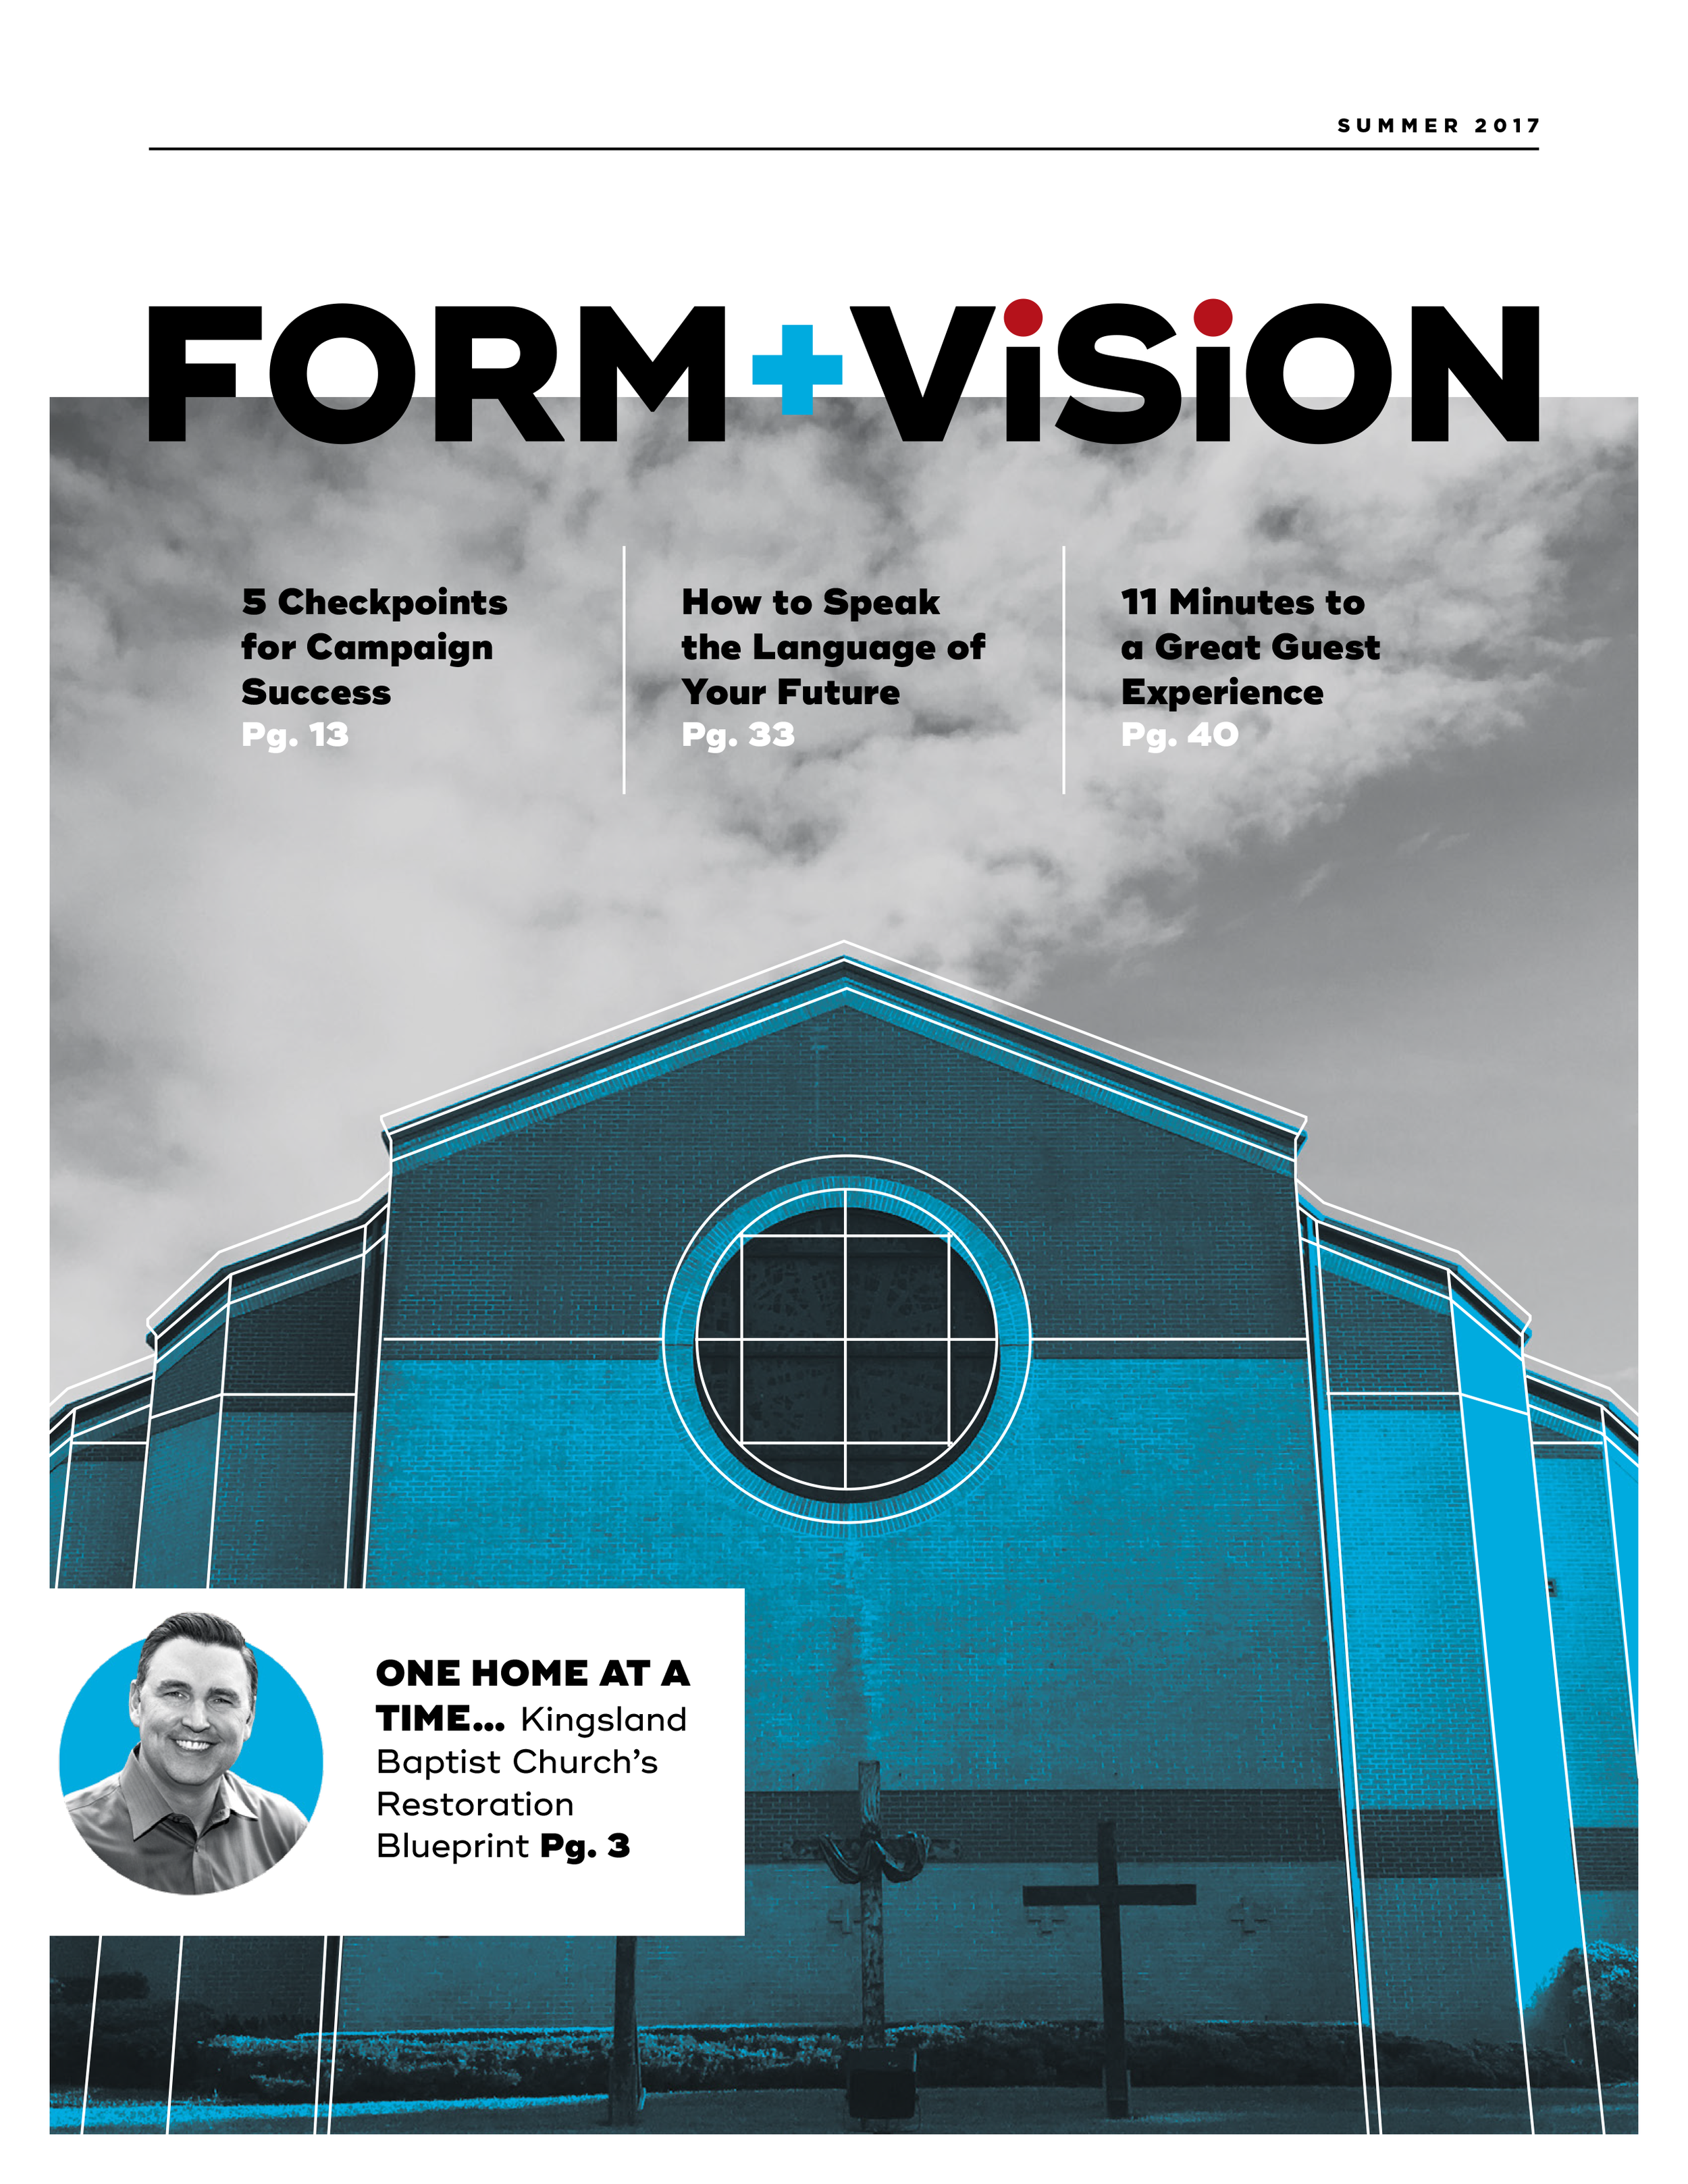 Form + Vision 2017